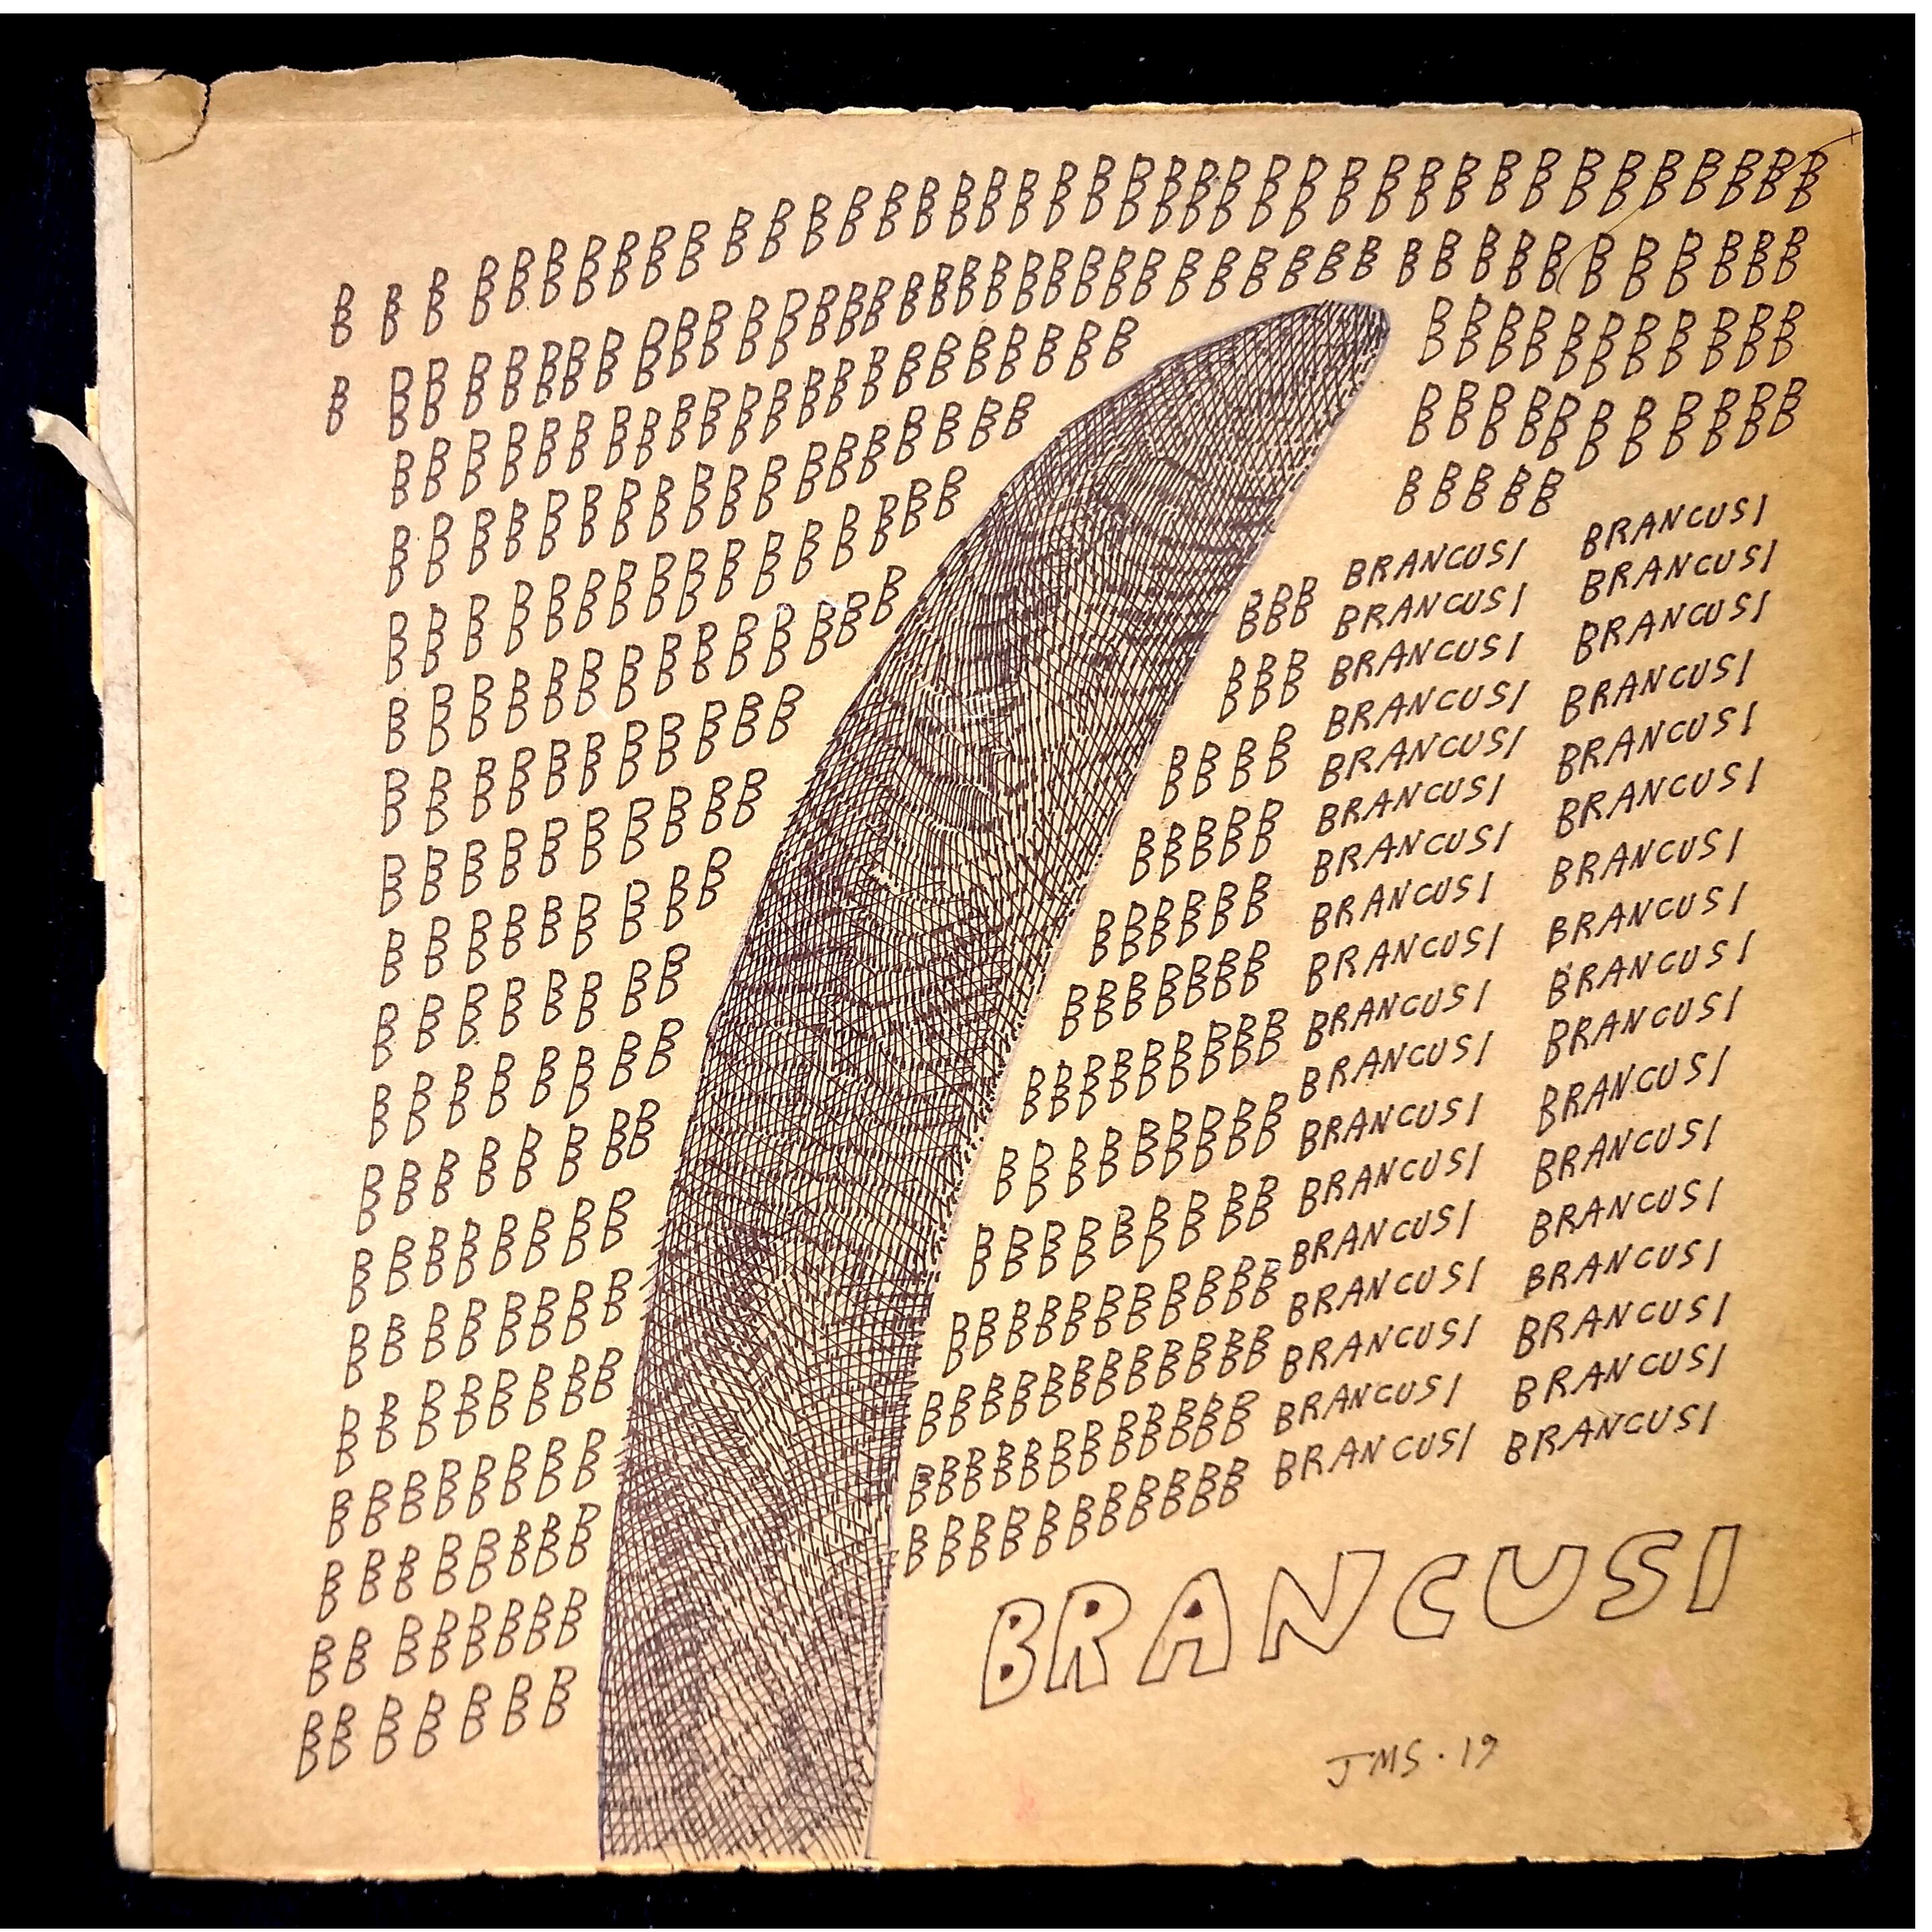 Jon Sarkin - "Brancusi" - 12.5" x 12.5" - Permanent marker, 2019